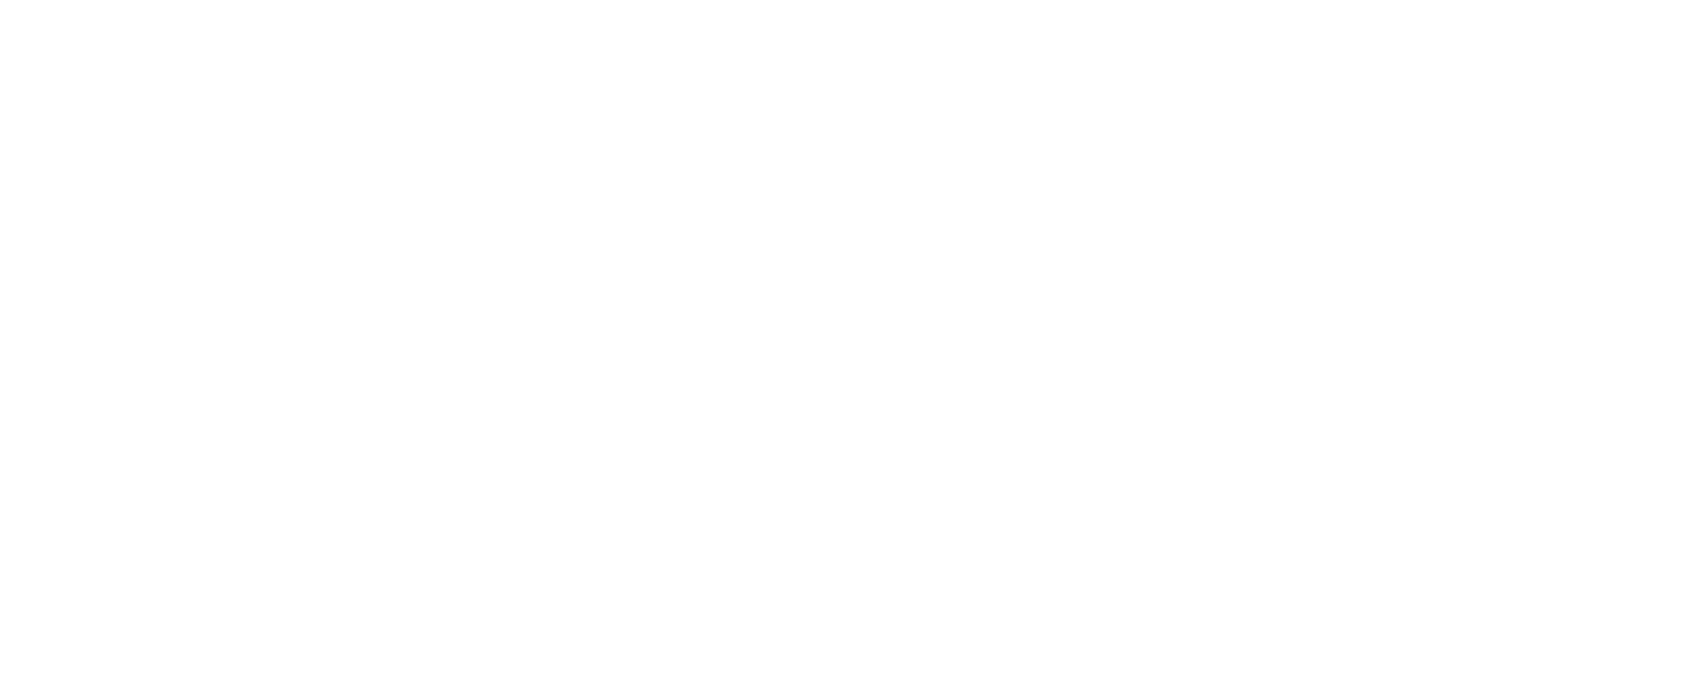 Association des Architectes en pratique privée